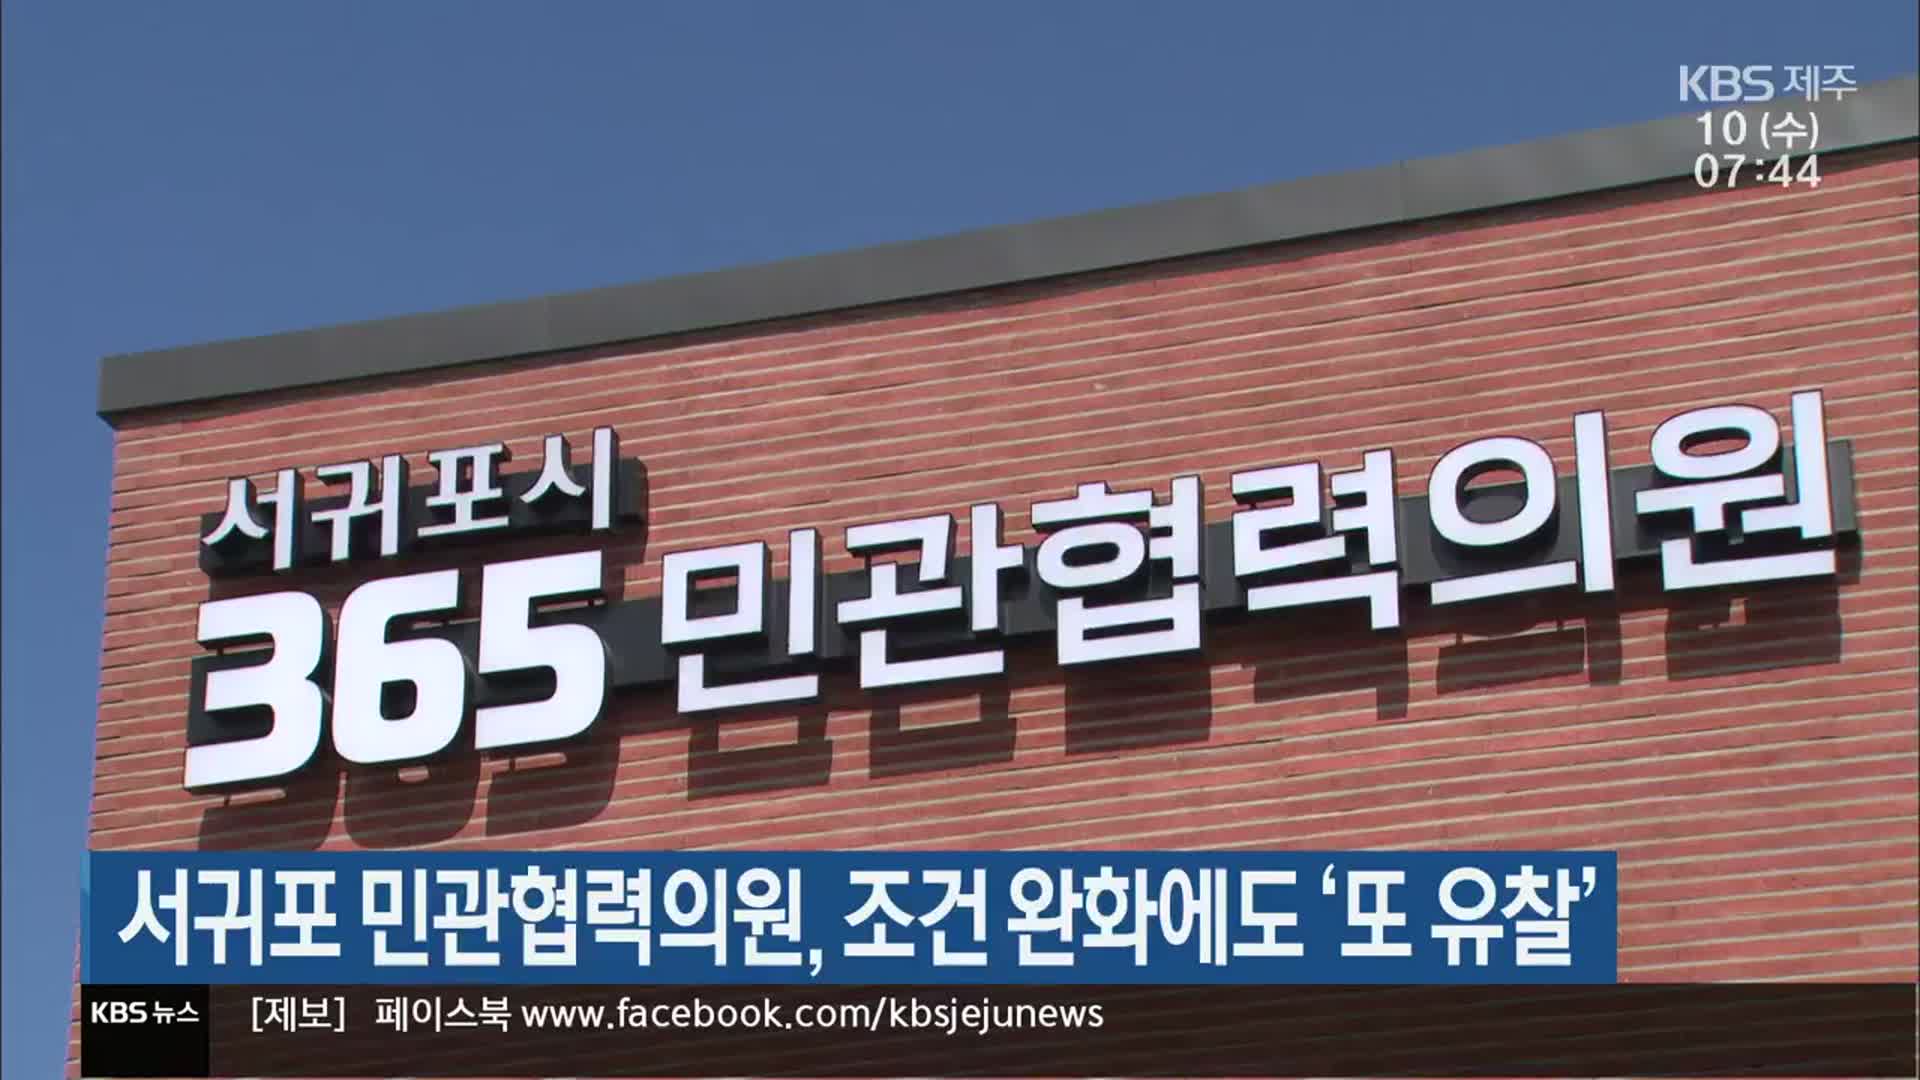 서귀포 민관협력의원, 조건 완화에도 ‘또 유찰’